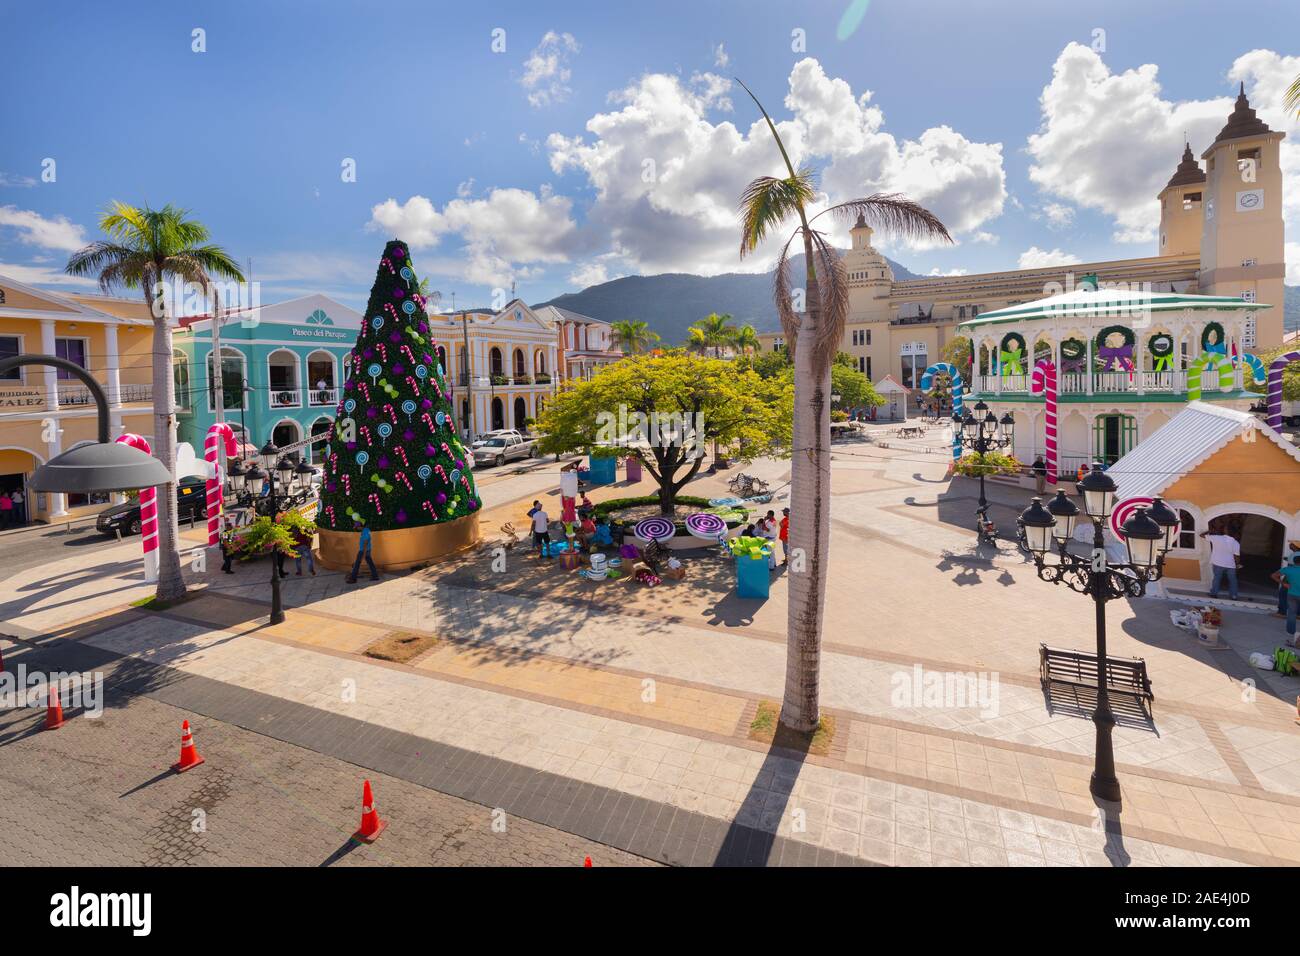 Lavoratori che mettono le decorazioni di Natale nella piazza della città latinoamericana di Puerto Plata, Repubblica Dominicana sull'isola di Hispaniola. Foto Stock